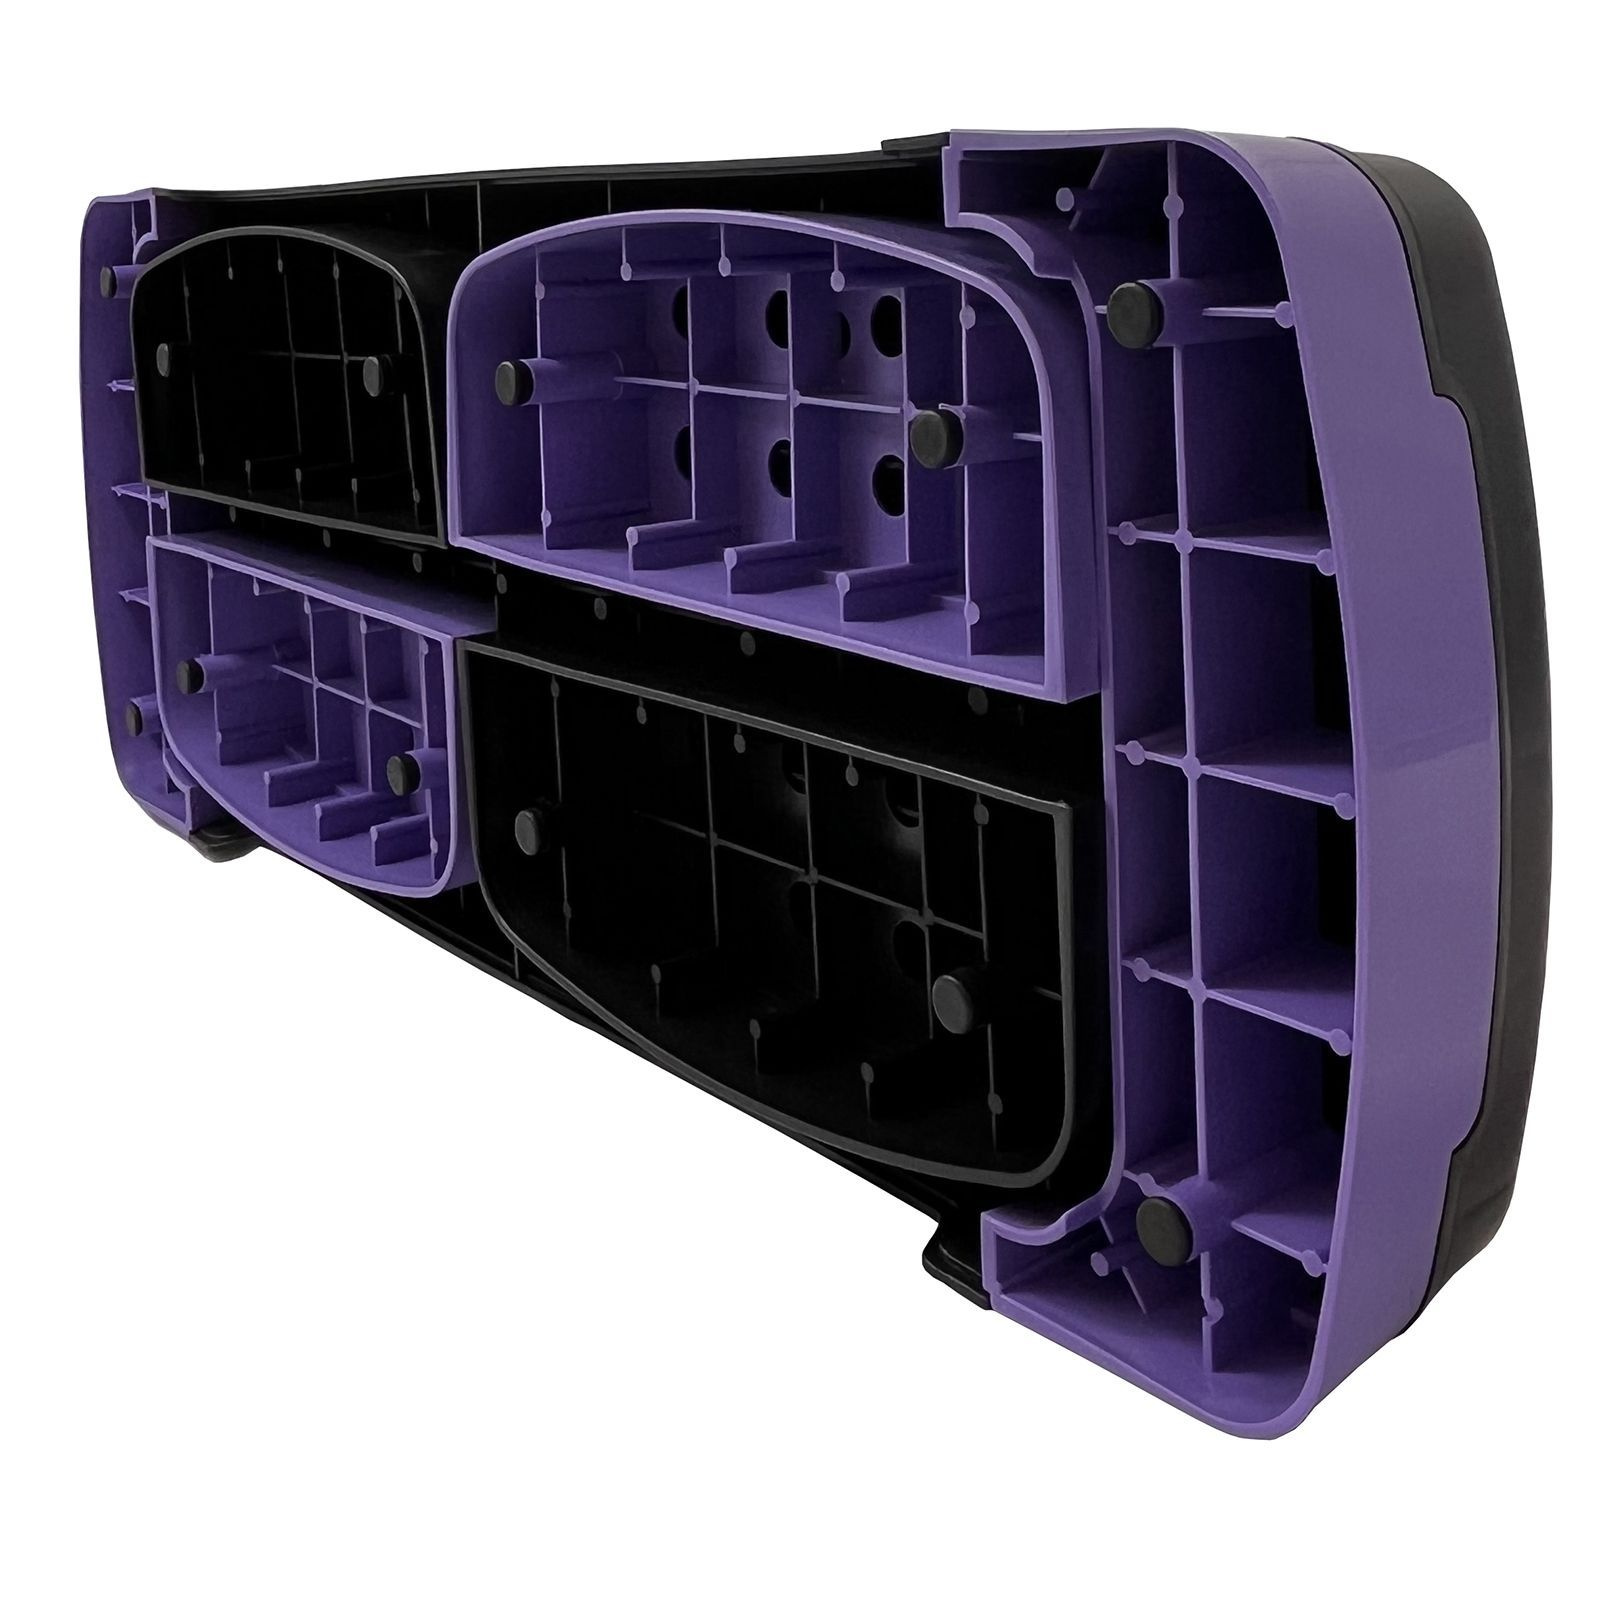 Степ-платформа UnixFit 3 уровня, 80 см, фиолетовый